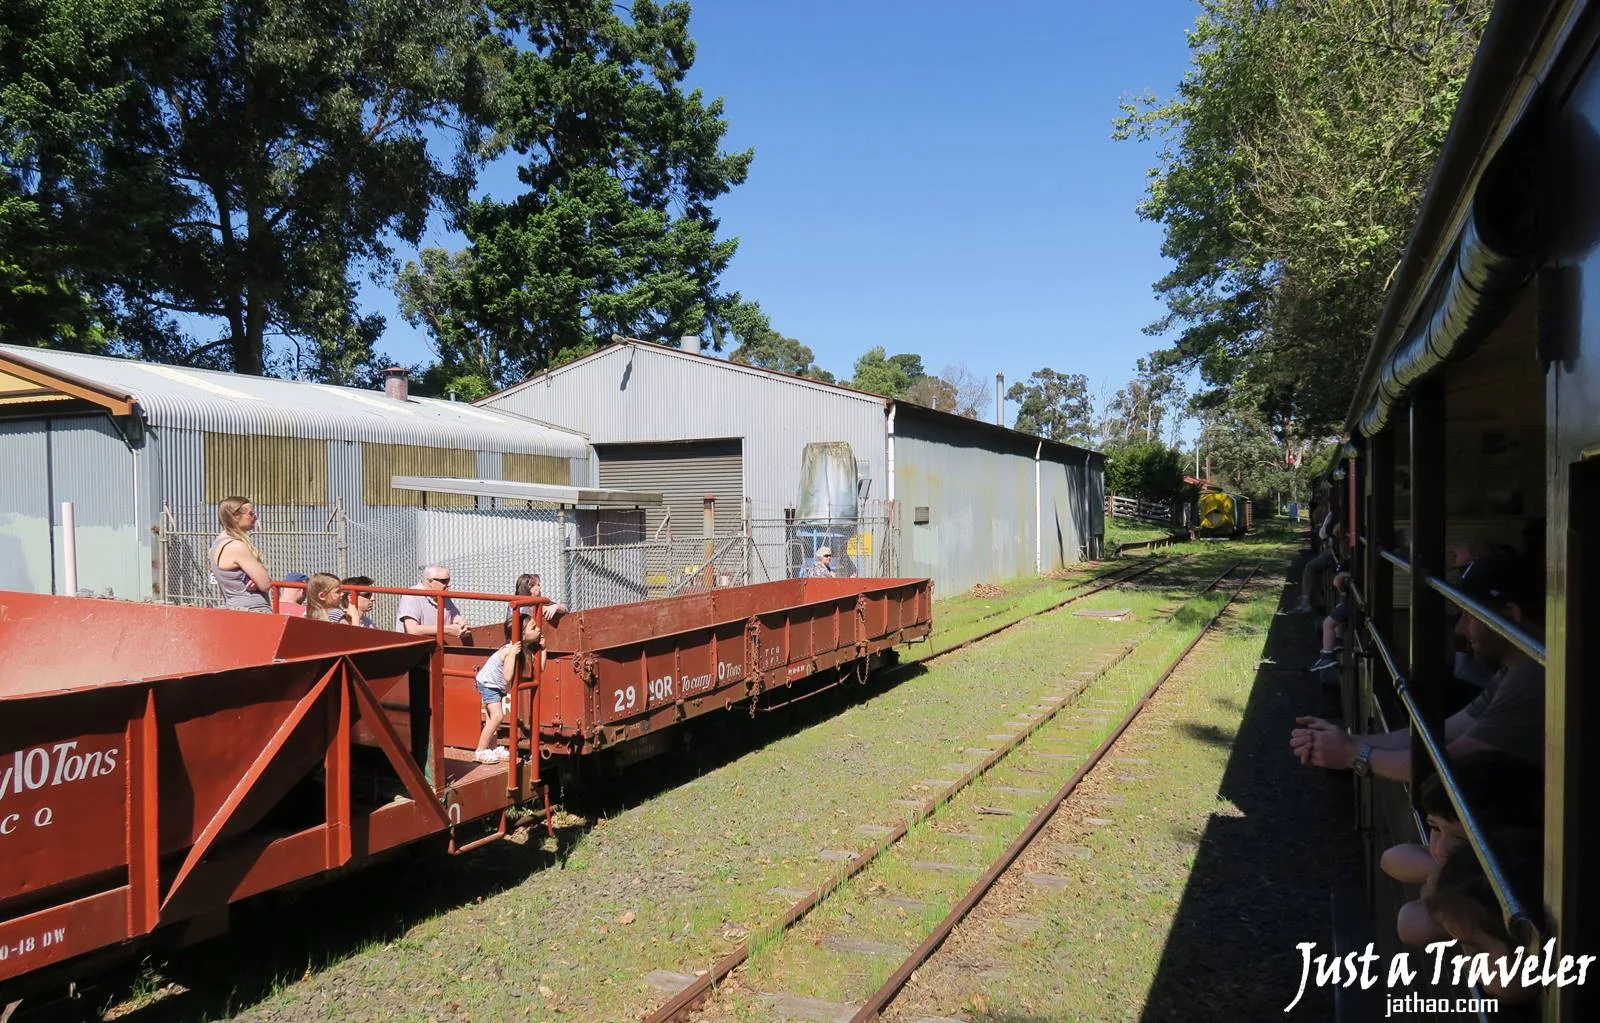 墨爾本-普芬比利蒸汽火車-普芬比利小火車-Puffing Billy Railway-普芬比利鐵路-遊記-搭乘-景點-推薦-自由行-一日遊-半日遊-行程-Melbourne